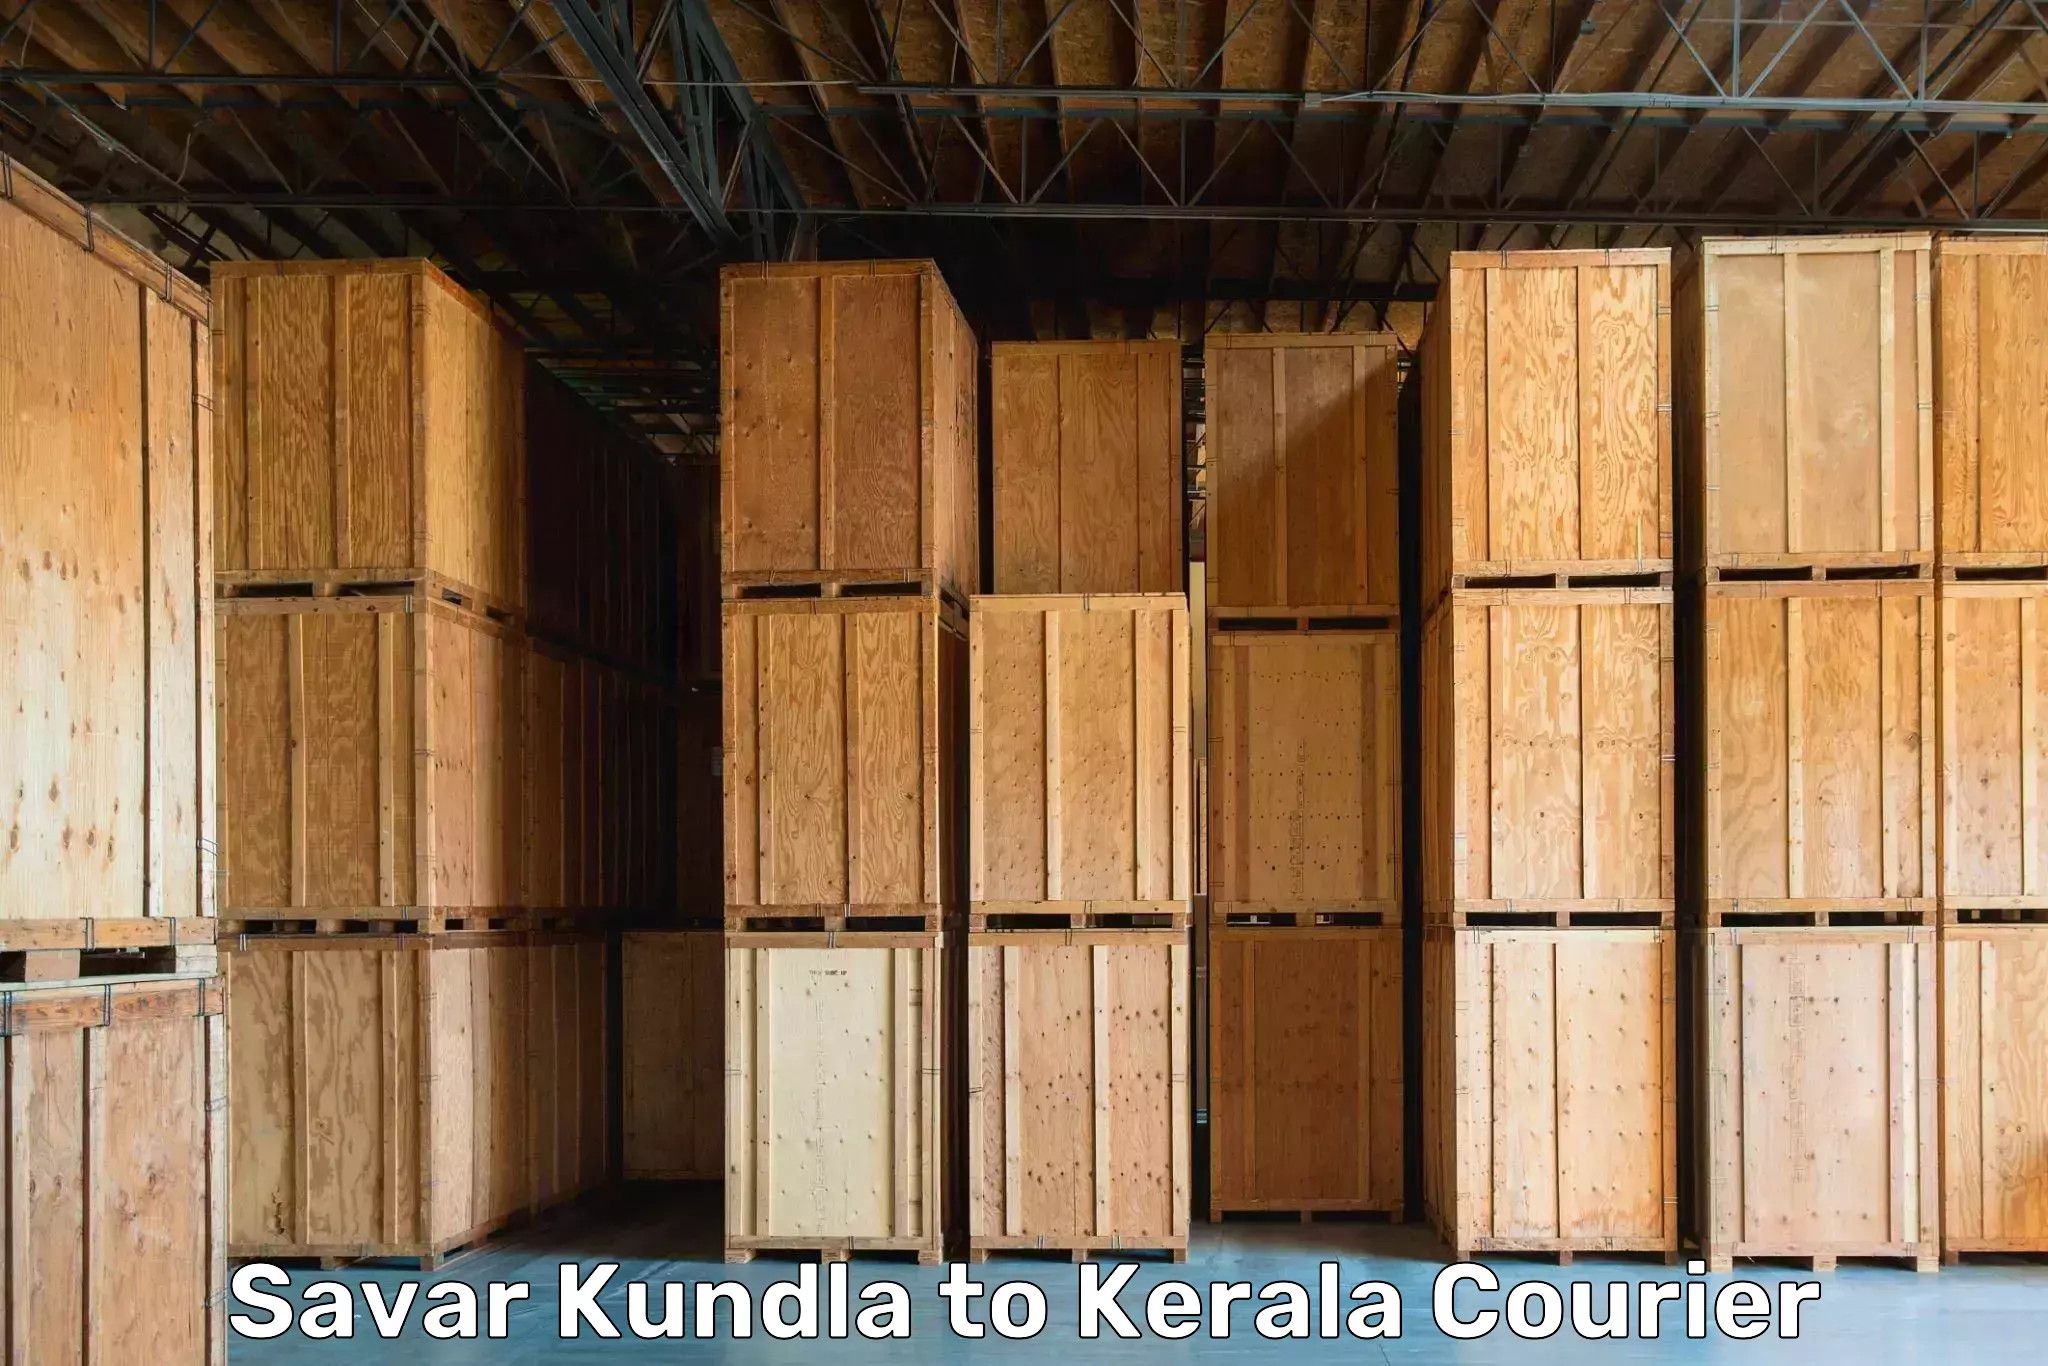 Furniture delivery service Savar Kundla to Munnar